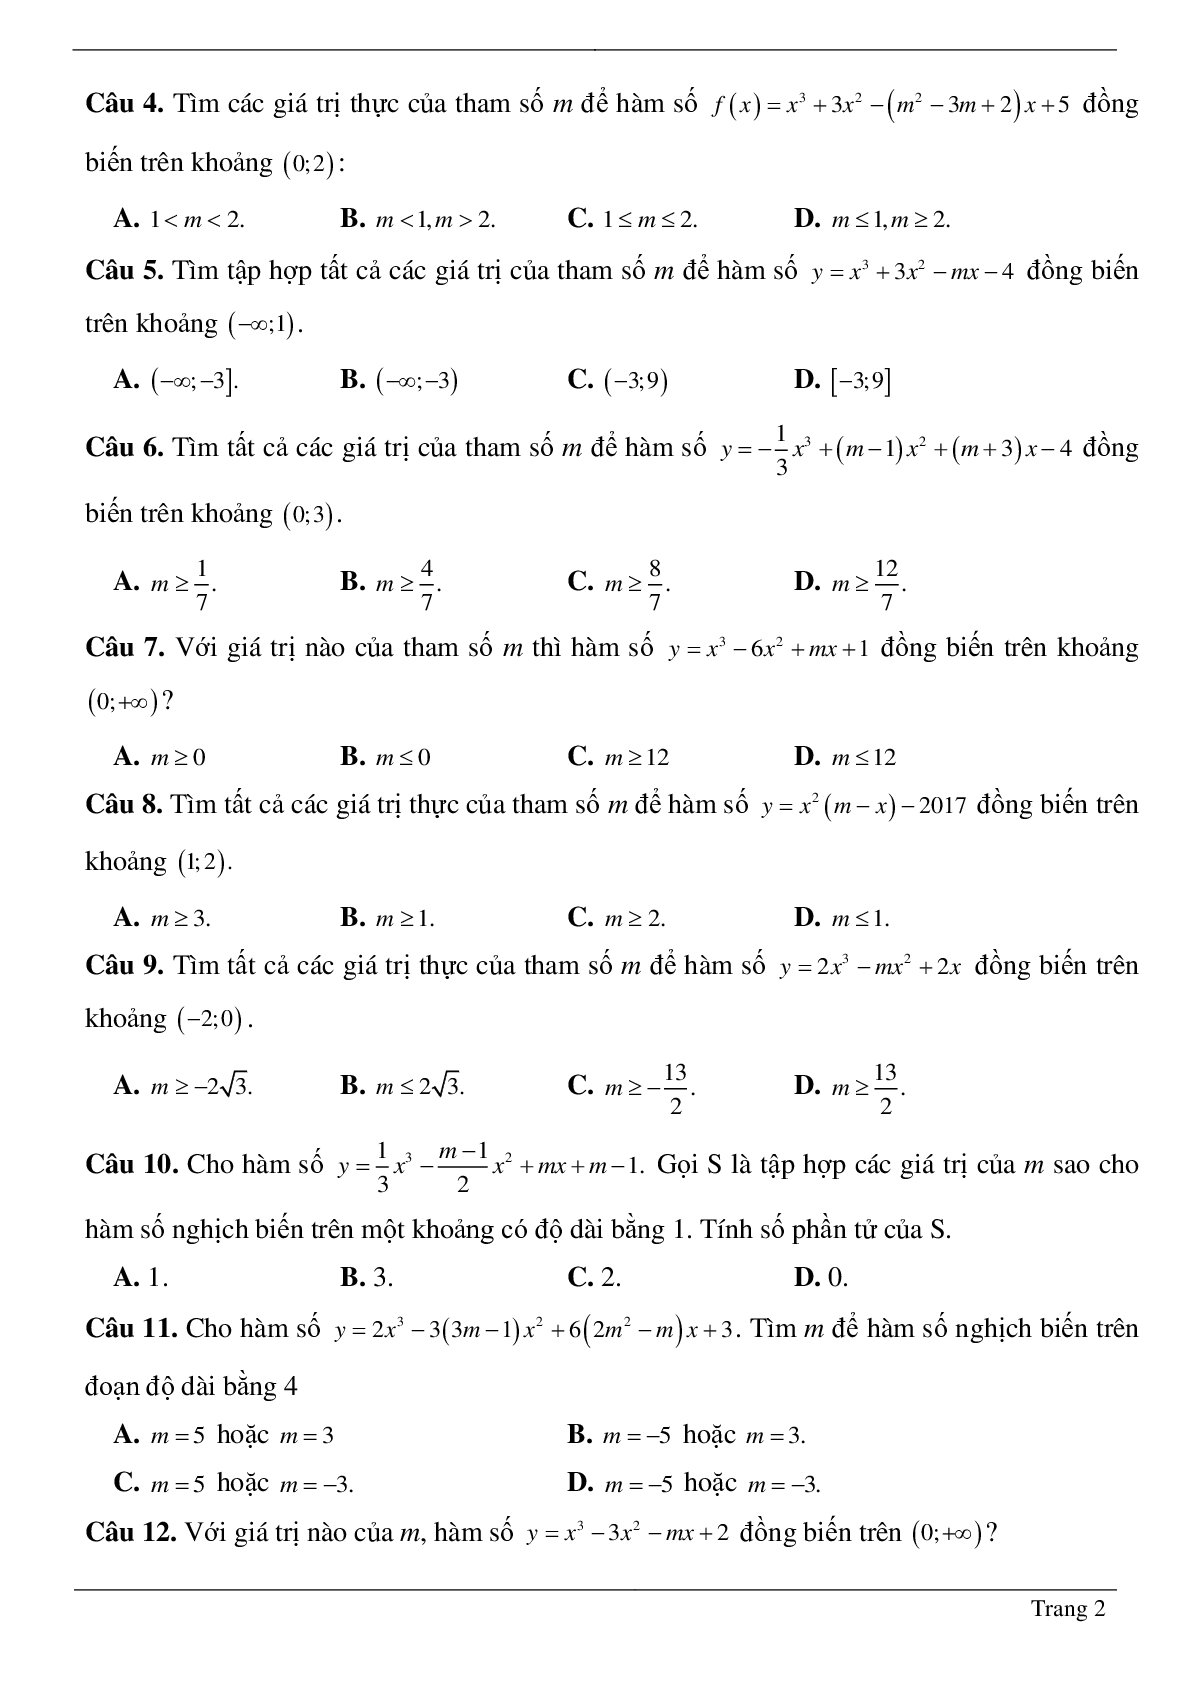 Tìm tham số M để hàm số bậc ba đồng biến, nghịch biến trên khoảng K cho trước (trang 2)